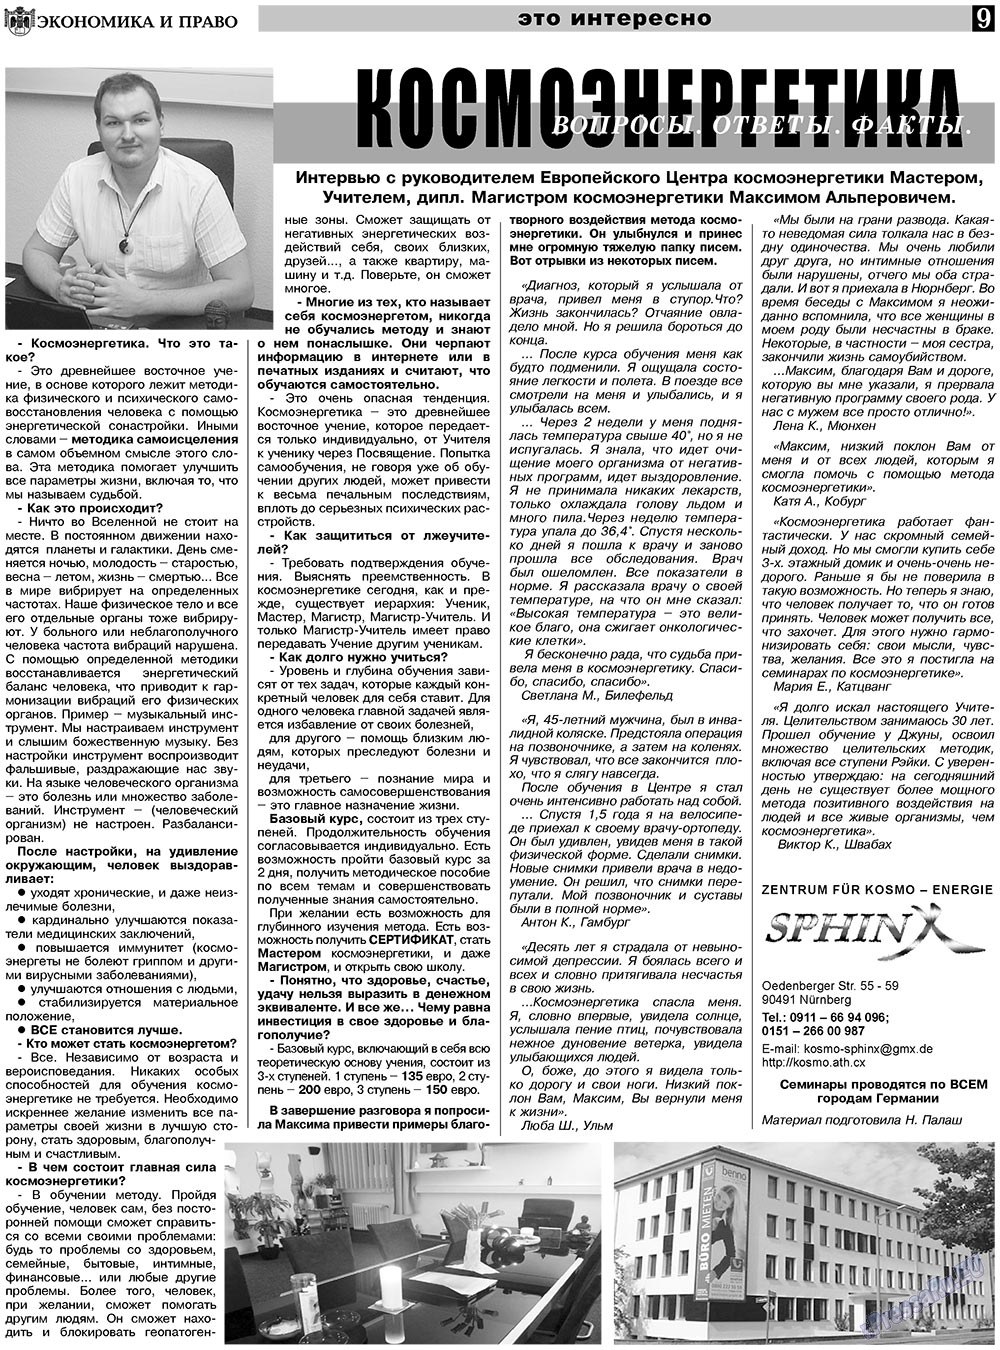 Экономика и право, газета. 2010 №12 стр.9